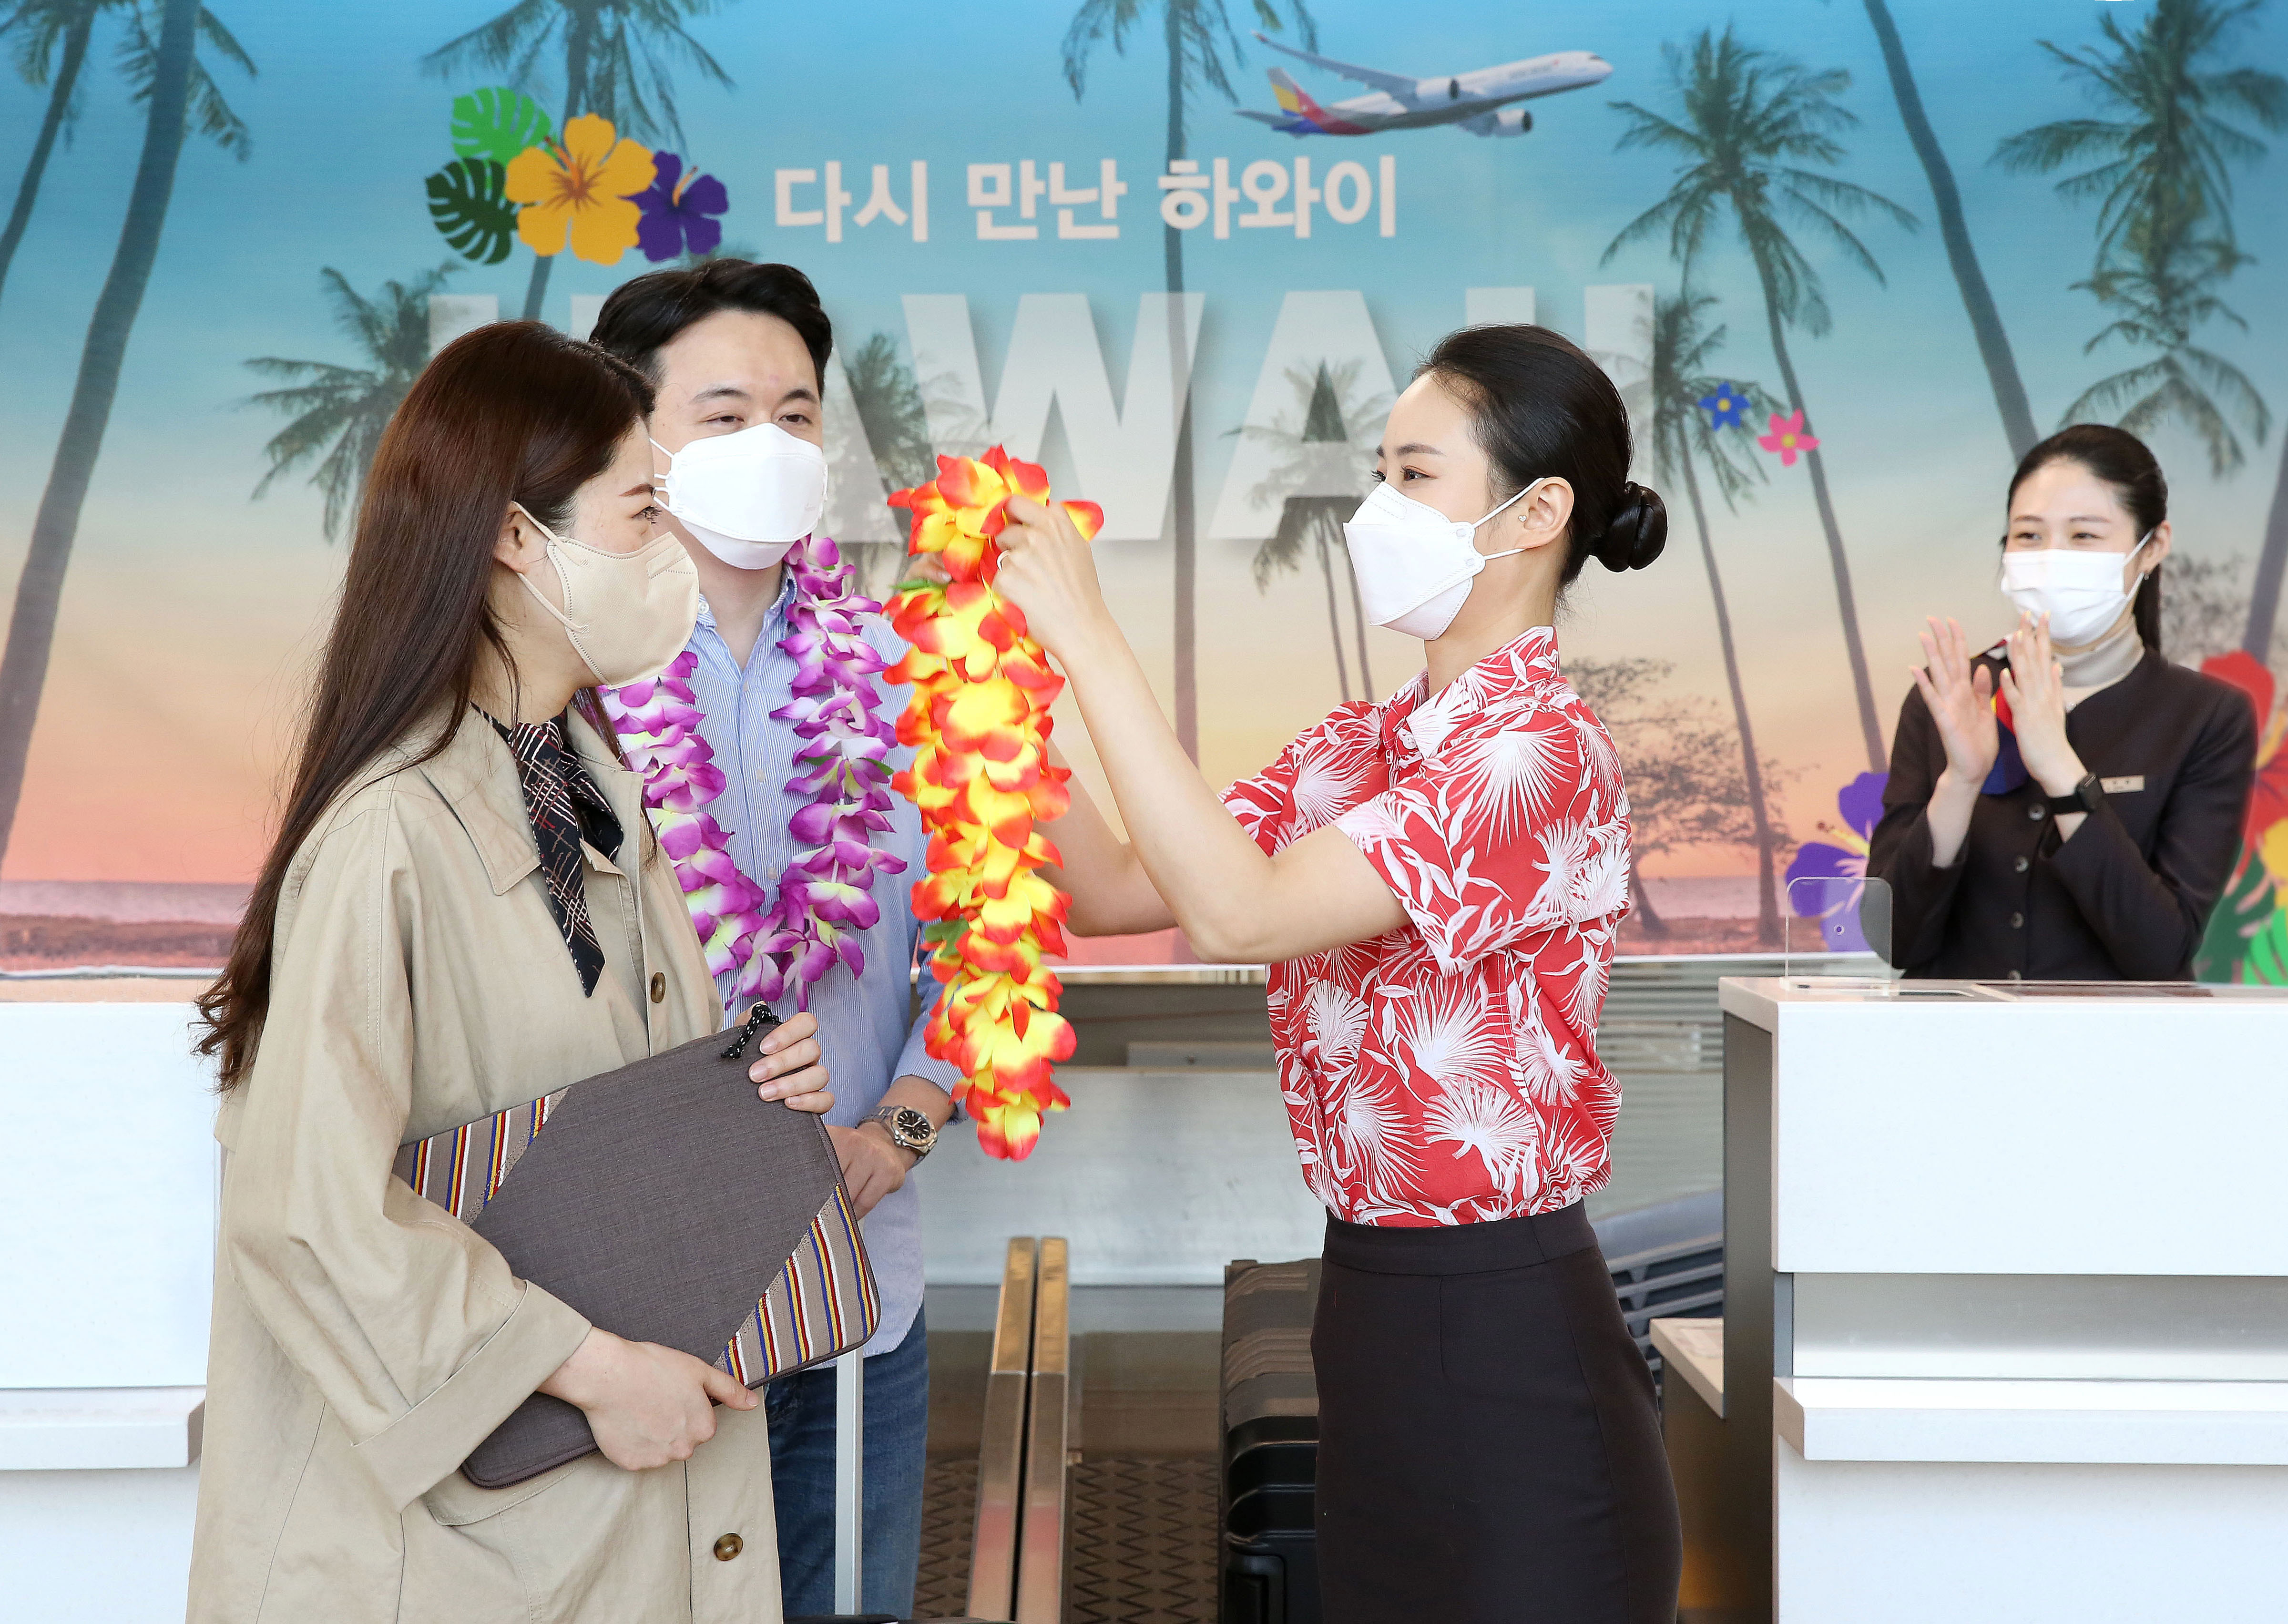 아시아나항공이 인천~하와이 노선 운행을 재개한 3일 인천국제공항 아시아나항공 카운터에서 한 직원이 탑승수속을 밟은 신혼 부부 승객에게 꽃다발을 걸어주고 있다. 아시아나항공 제공